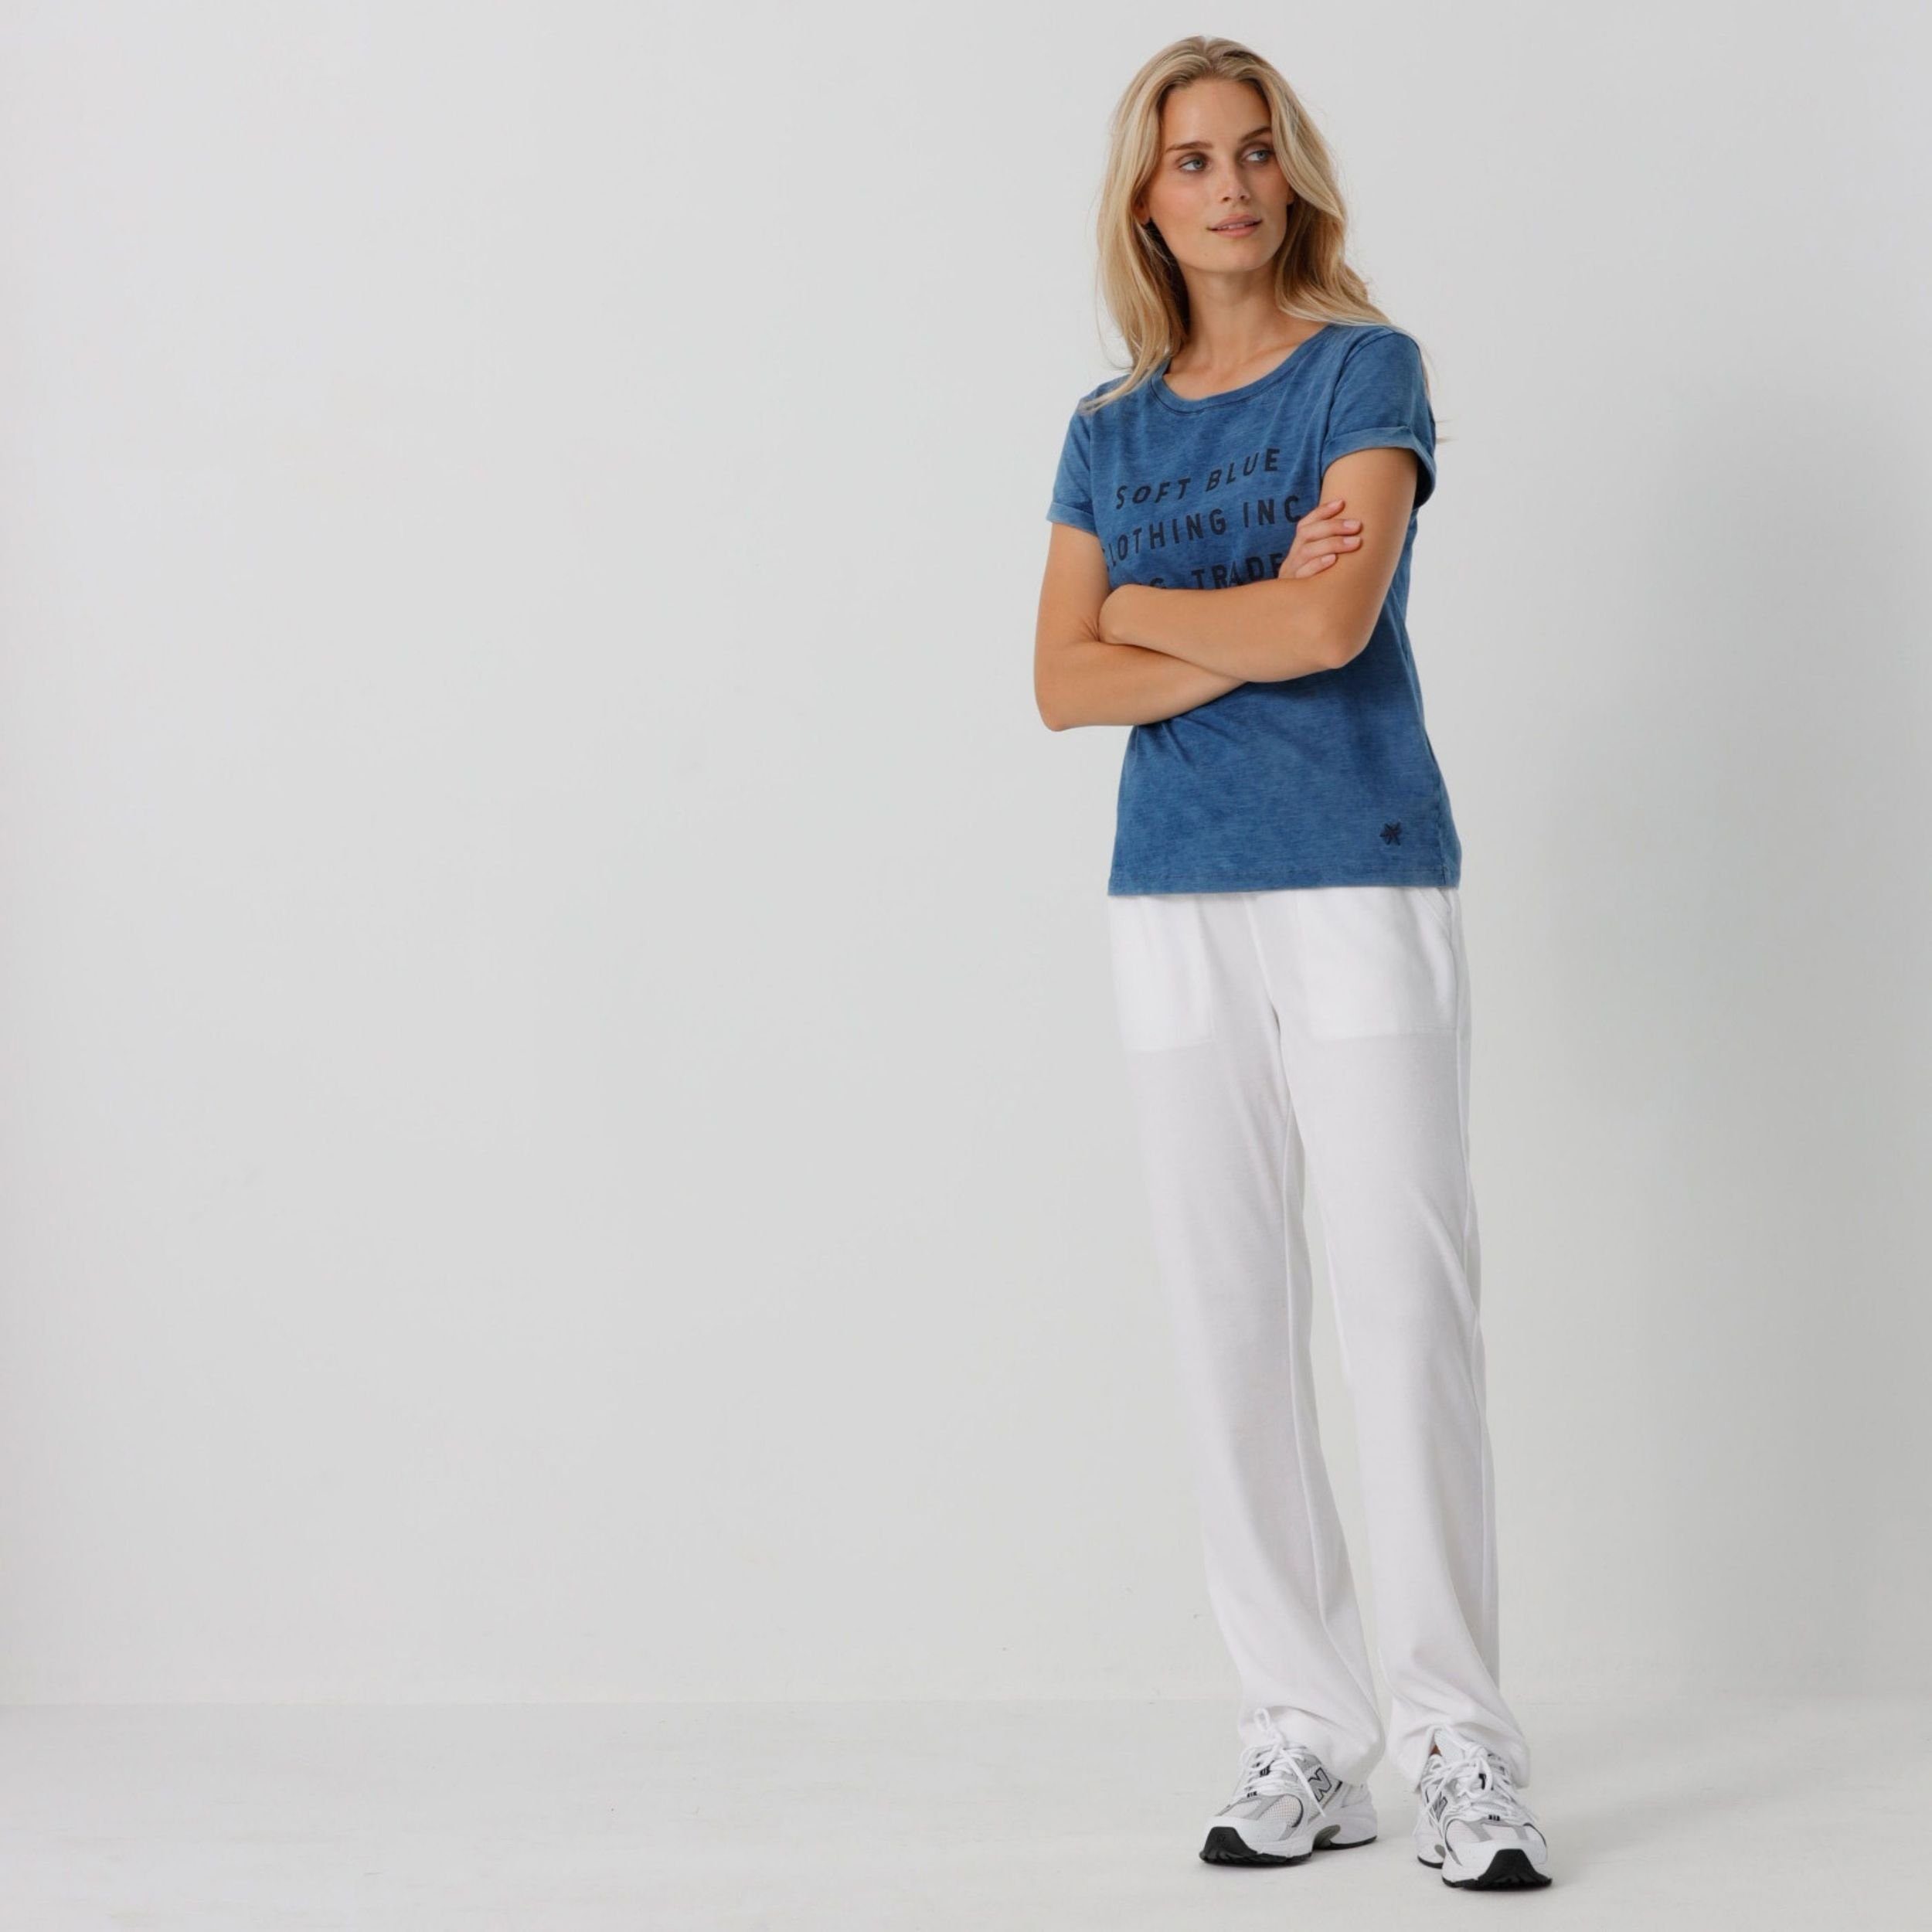 Weiche Sportswear in Bund mit Melon Blue Weiß Jogger elastischem Portofino Samthose Nicki oder